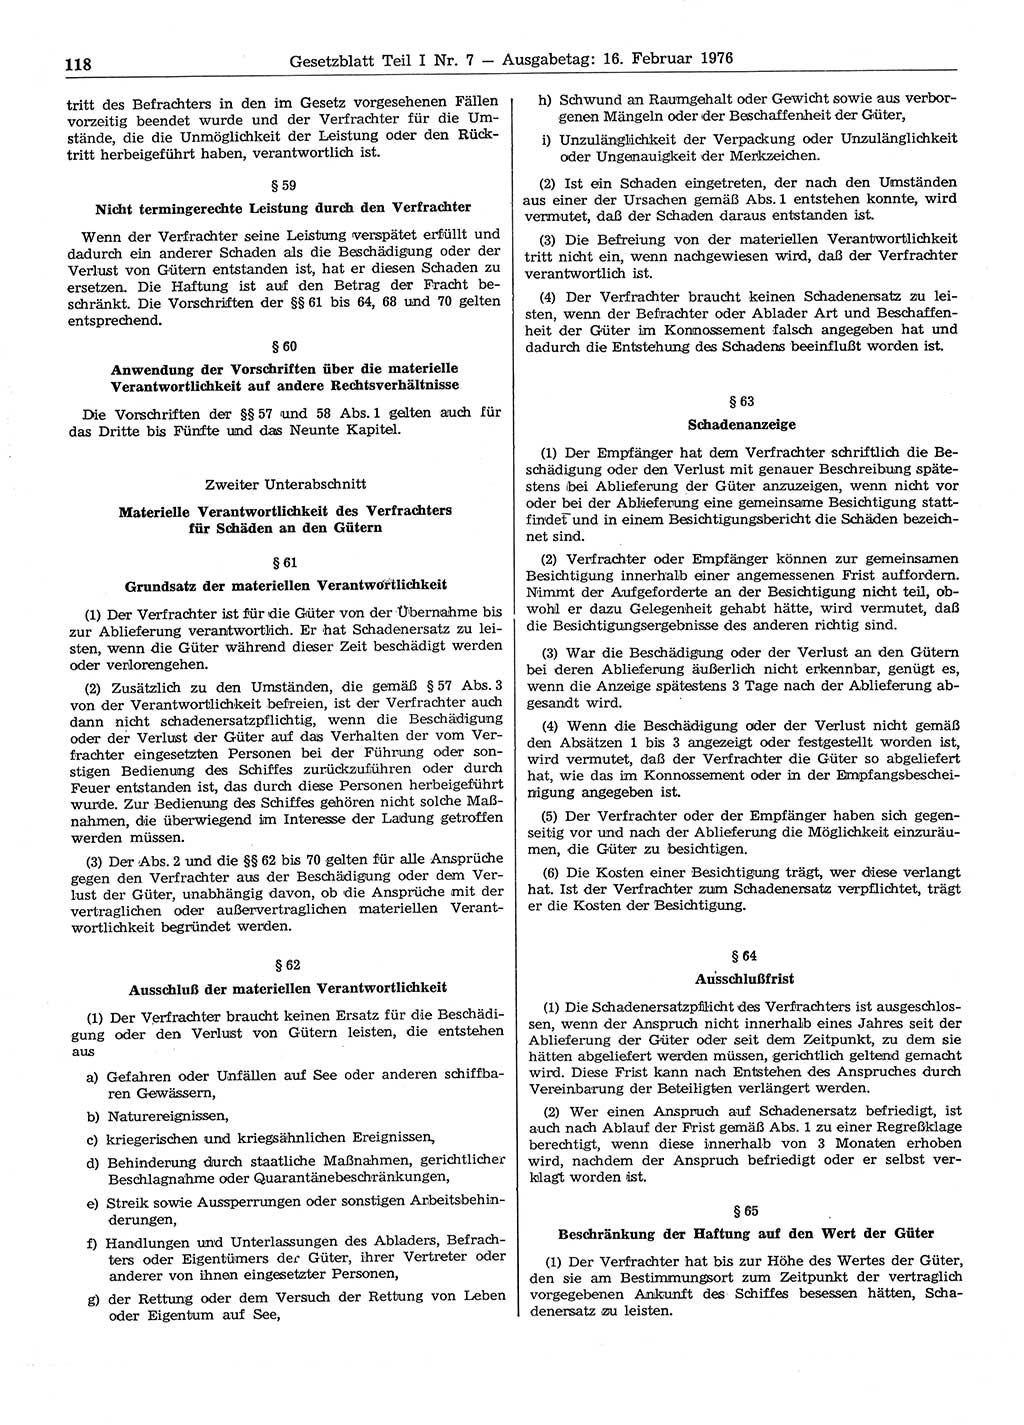 Gesetzblatt (GBl.) der Deutschen Demokratischen Republik (DDR) Teil Ⅰ 1976, Seite 118 (GBl. DDR Ⅰ 1976, S. 118)